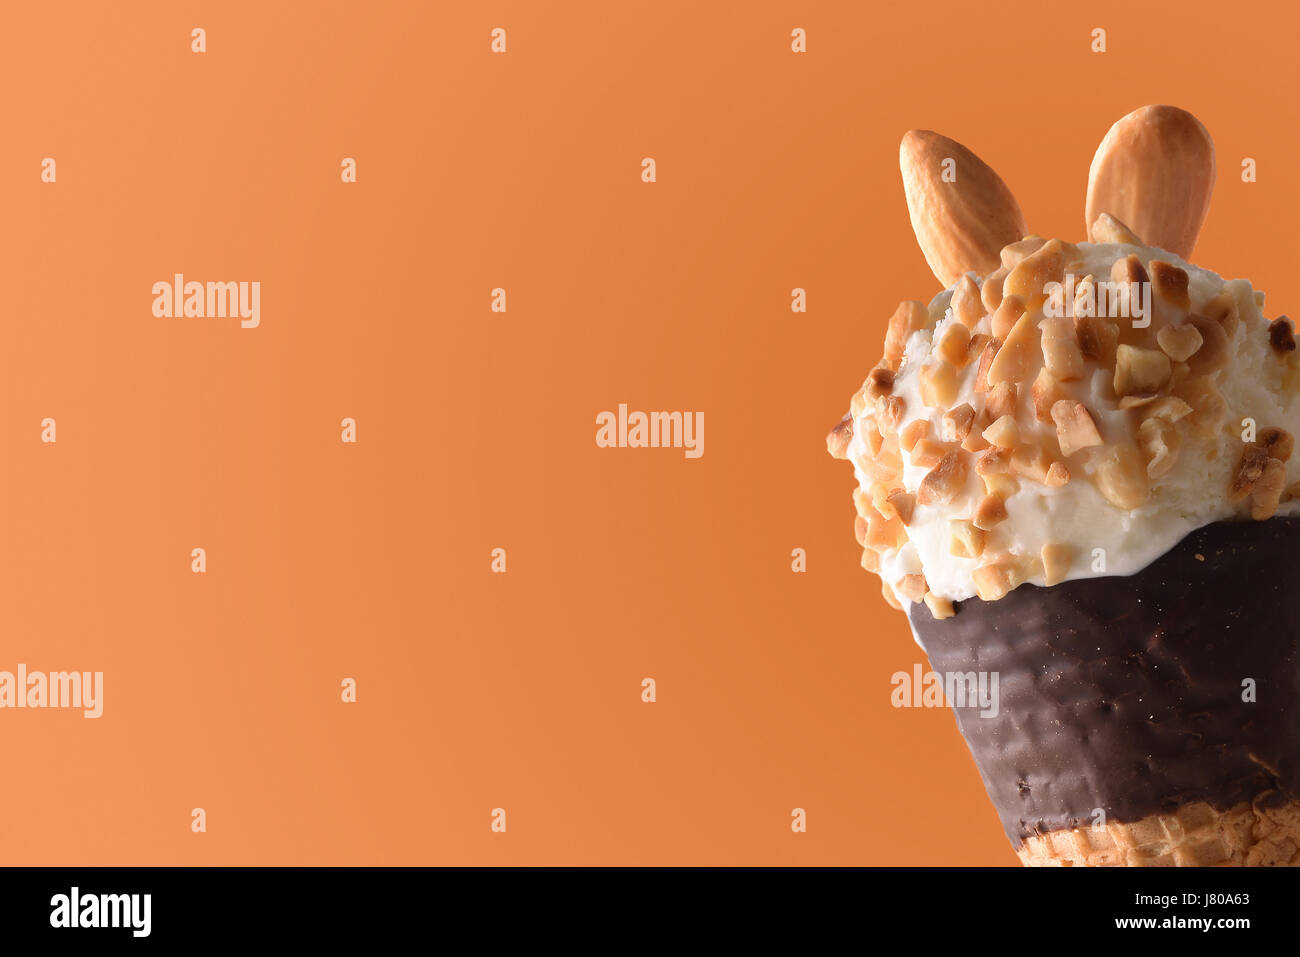 Ice Cream Cone aromatisierte Sahne Mandel hautnah. Garniert mit kleinen Stücken von Mandeln. Mit orangem Hintergrund. Horizontale Komposition. Stockfoto